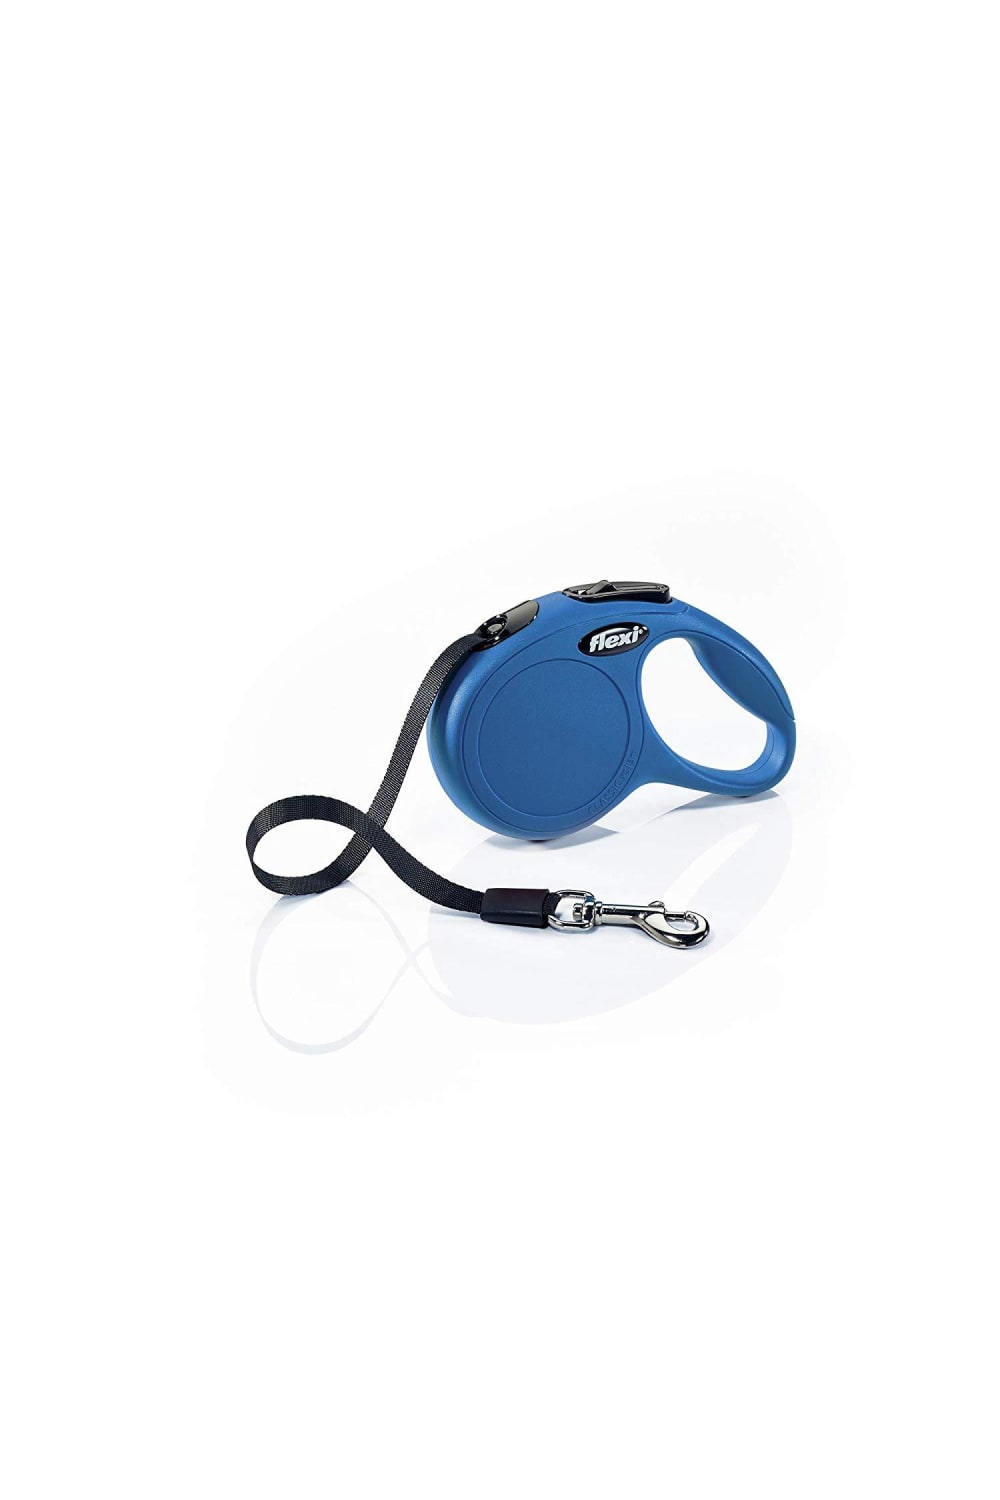 Flexi Classic Retractable Tape Pet Leash (Blue) (L)